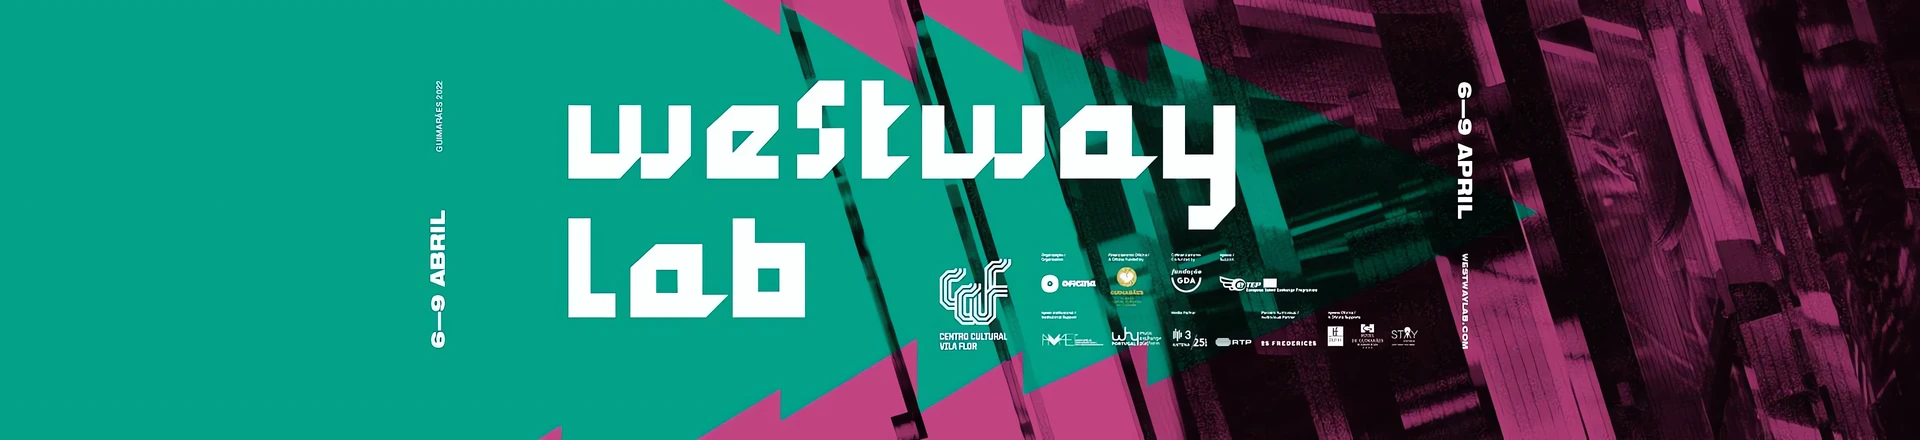 Westway Lab Festival w Portugalii